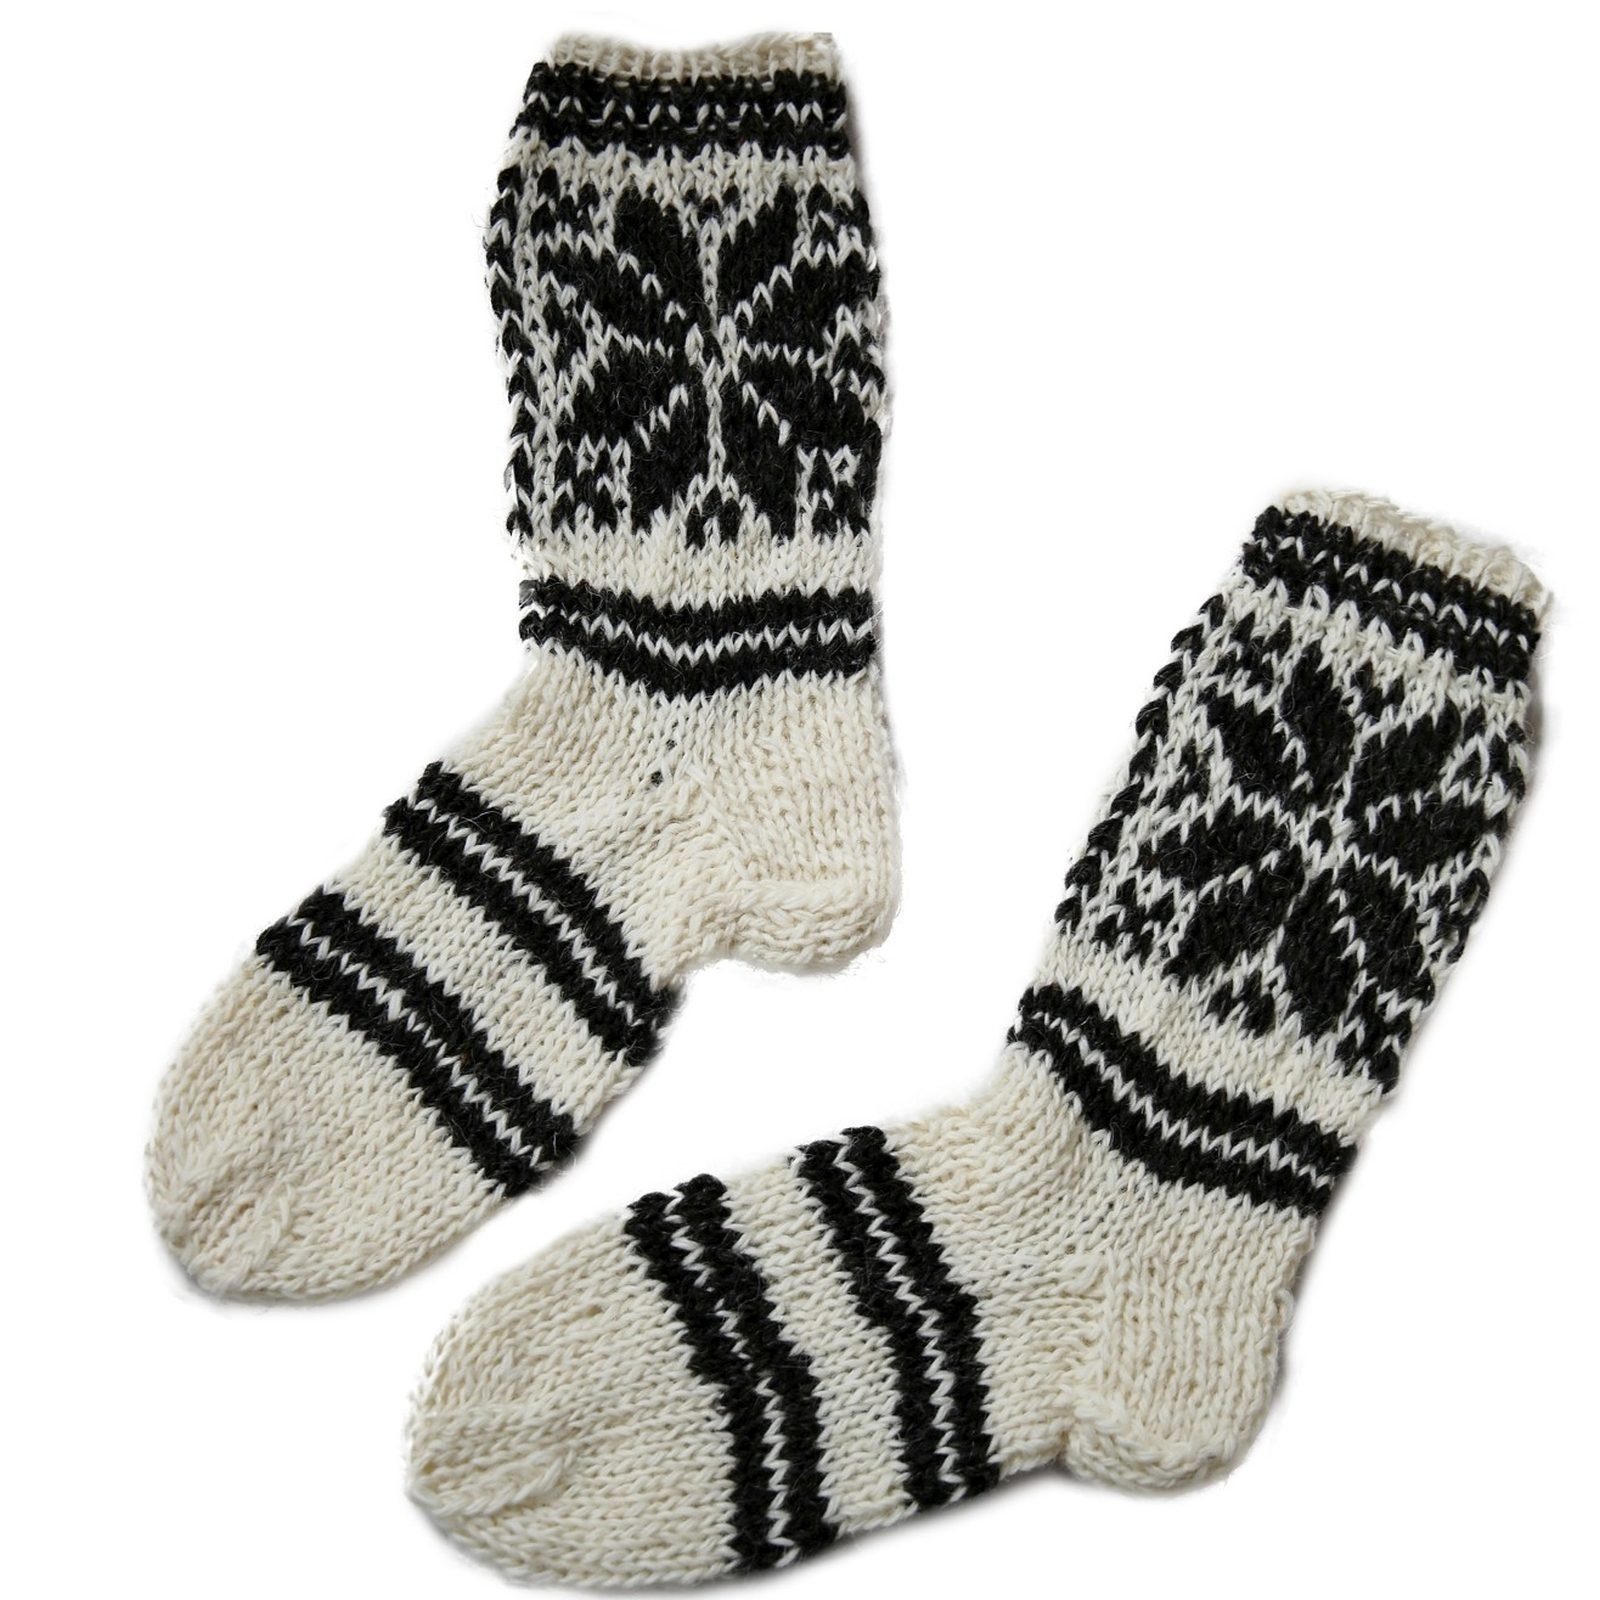 Hollert Haussocken Damen Wollsocken Stricksocken Handgestrickte Socken aus  100% Schafwolle 1 Stern Modell 1